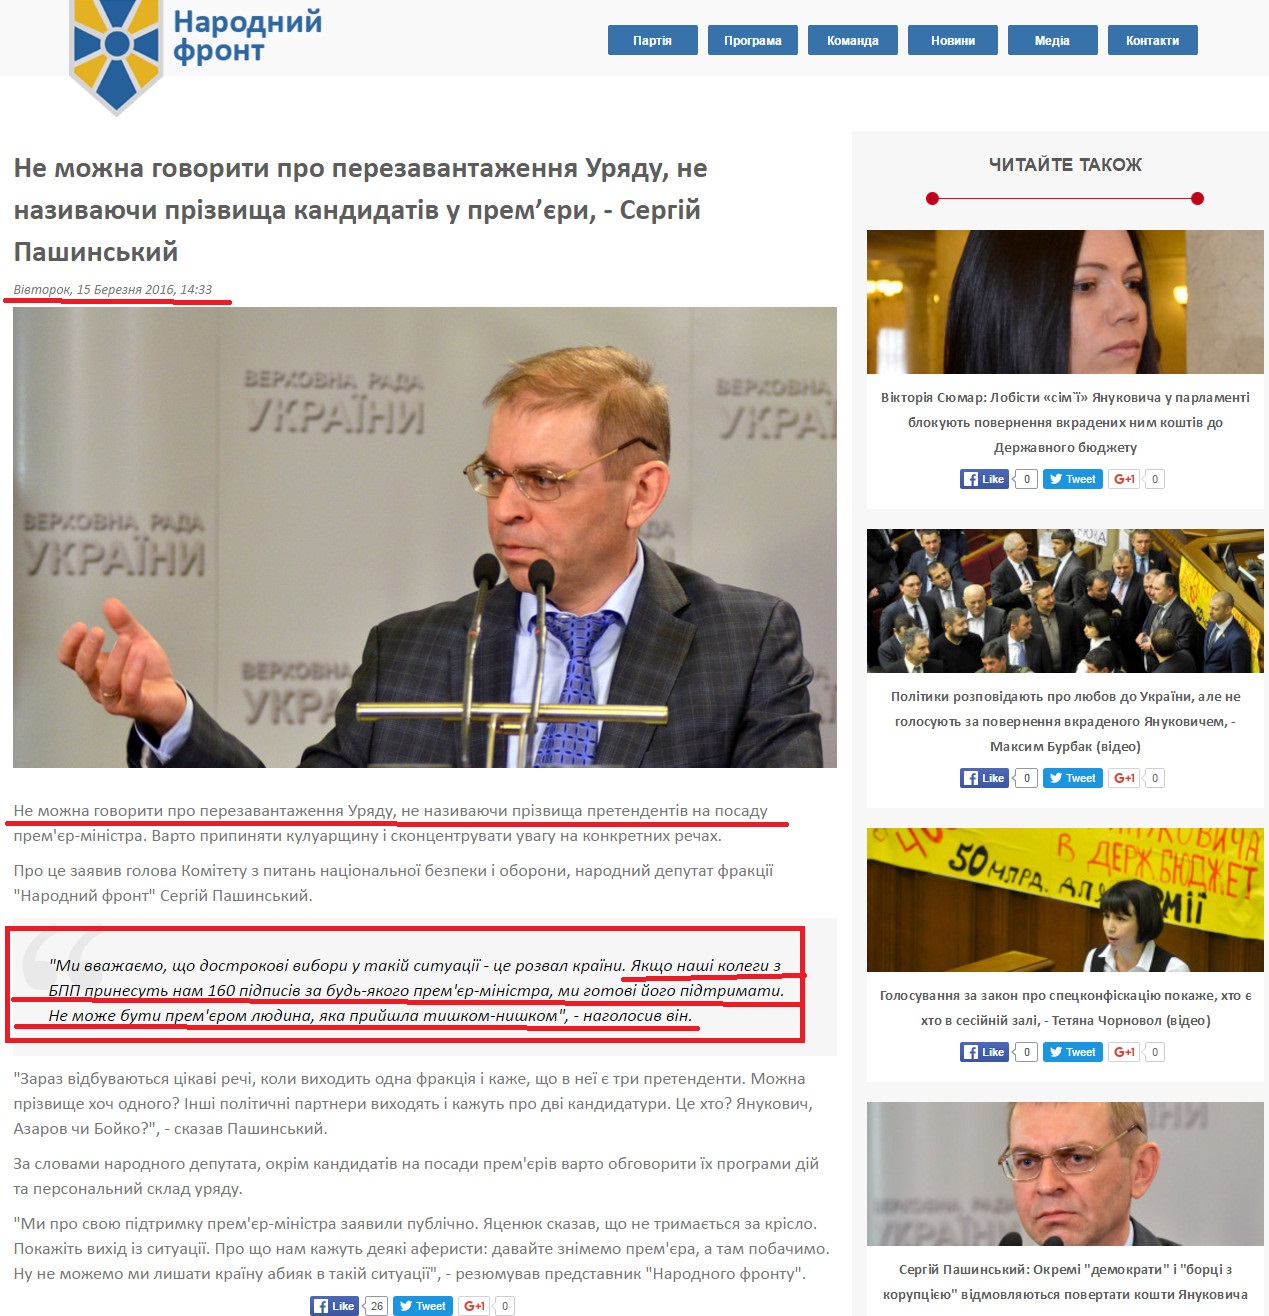 http://nfront.org.ua/news/details/ne-mozhna-govoriti-pro-perezavantazhennya-uryadu-ne-nazivayuchi-prizvisha-kandidativ-v-premyeri-sergij-pashinskij